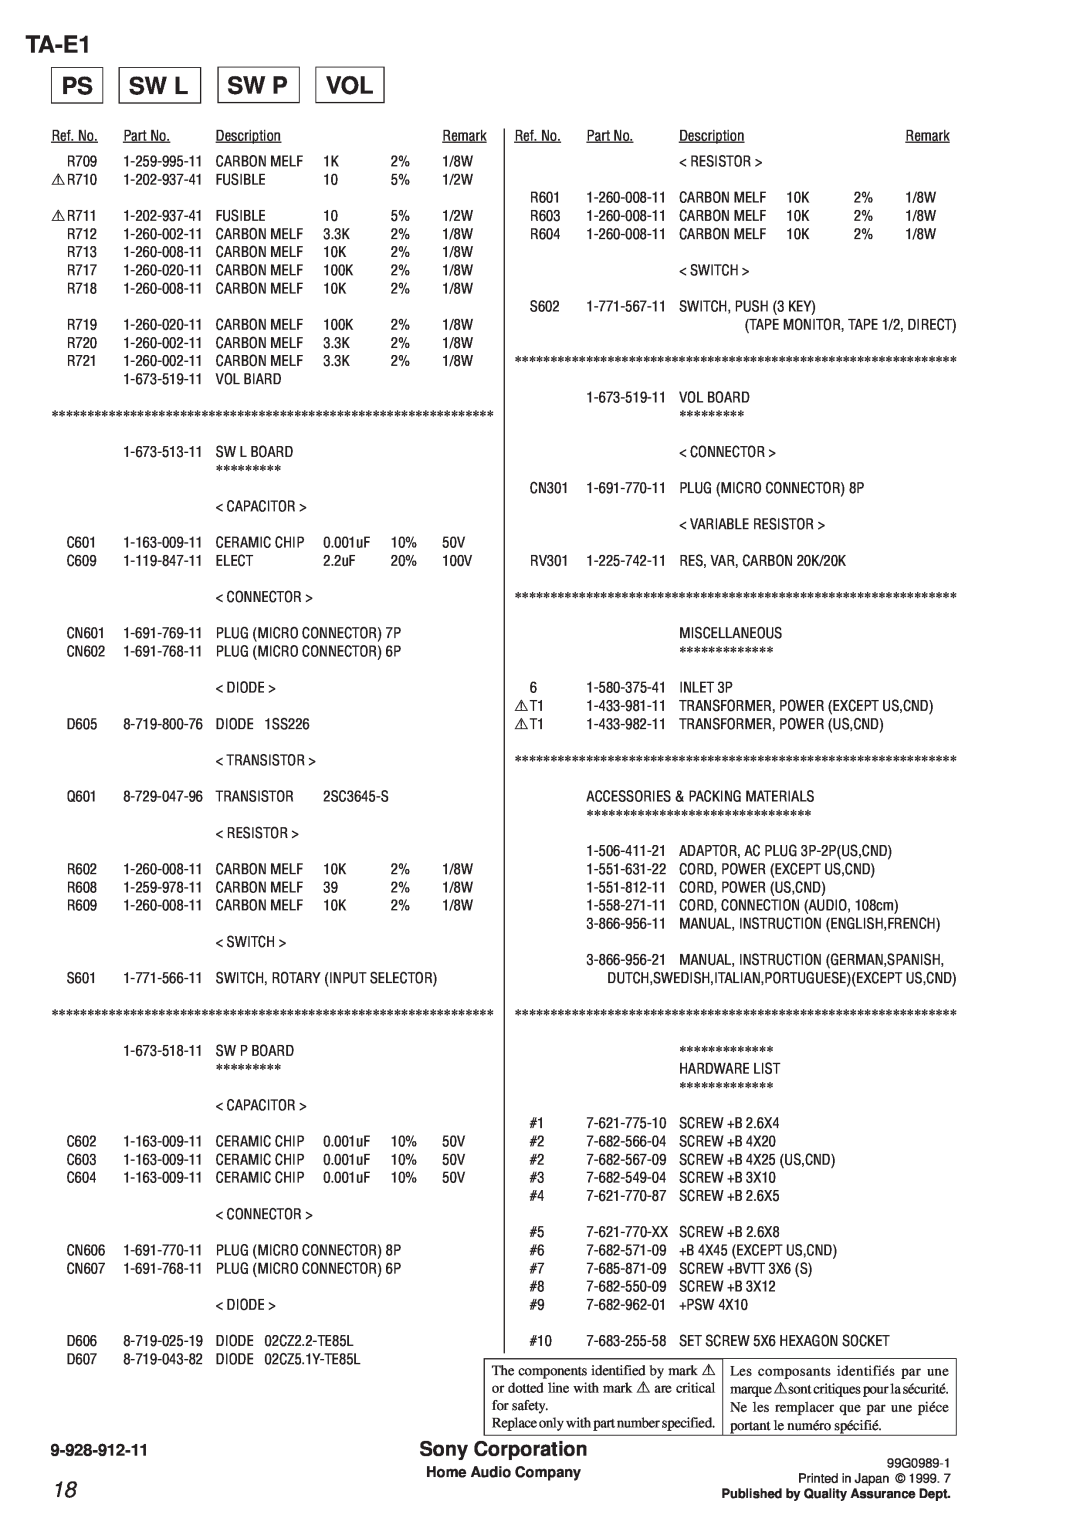 Sony manual TA-E1 PS, Sw L, Sw P, 9-928-912-11, Sony Corporation, Home Audio Company 